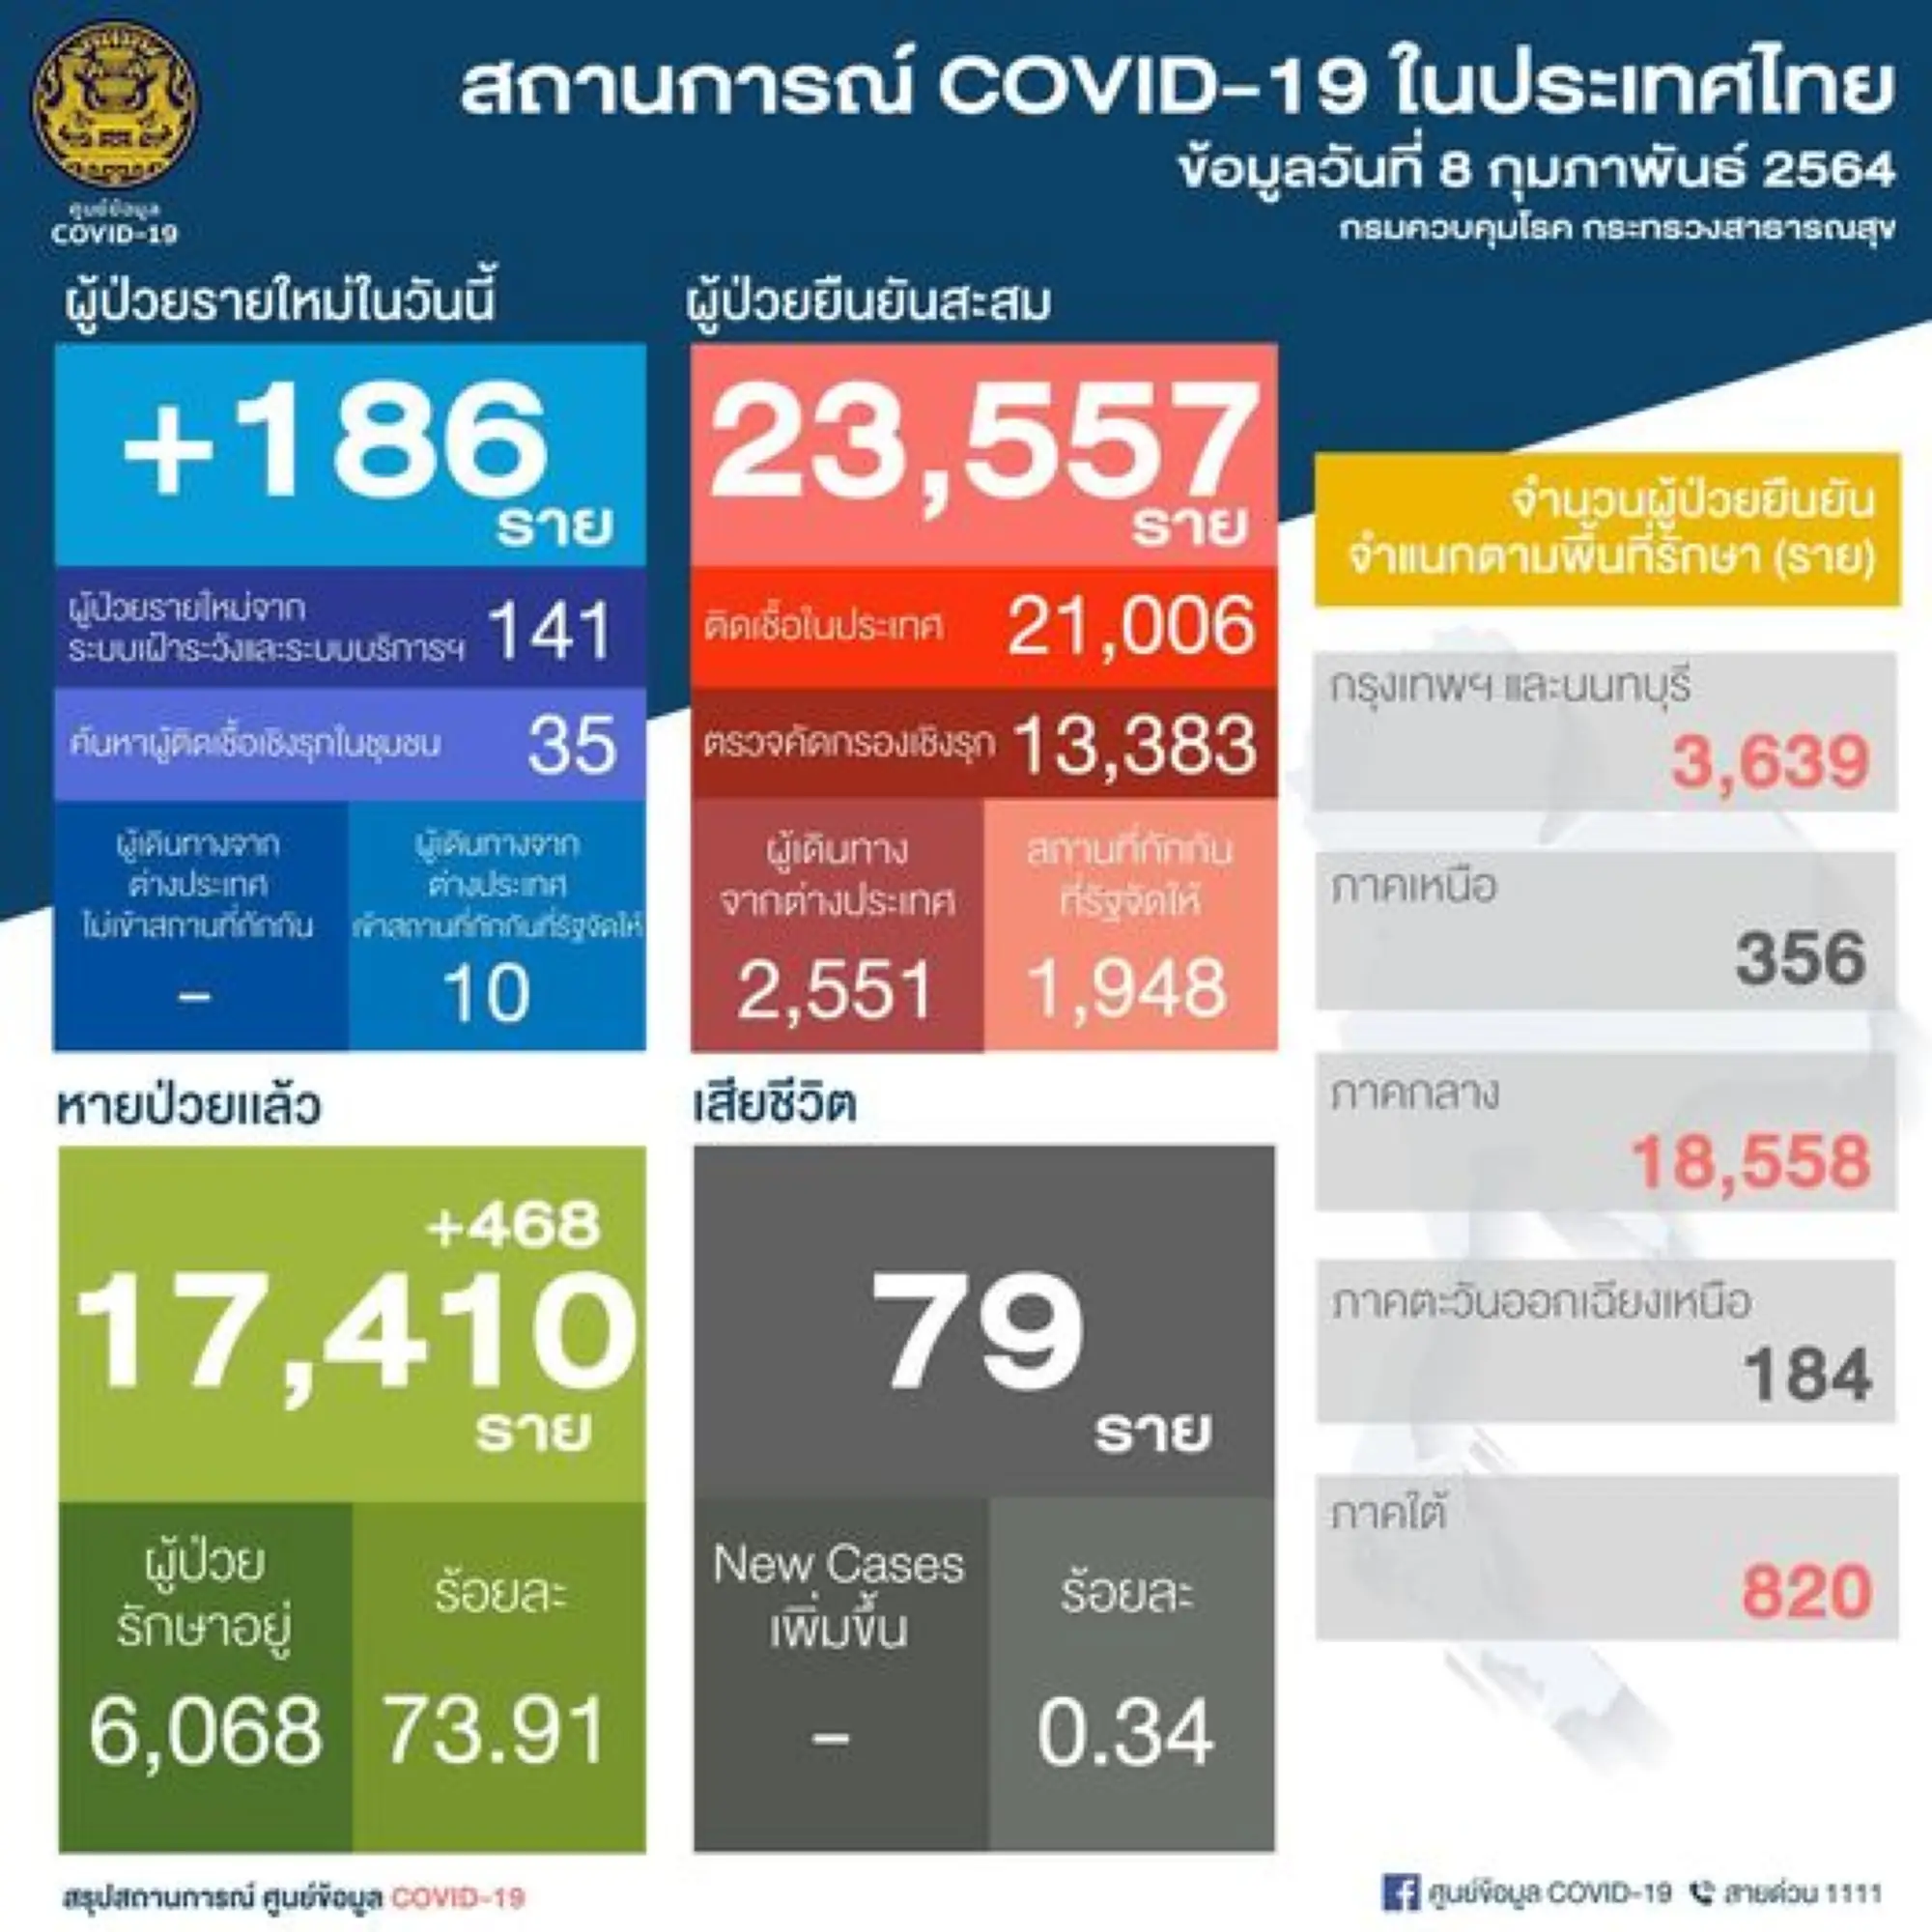 泰国疫情8日新增186例 （图片来源：PR Thai Government 脸书粉丝专页）